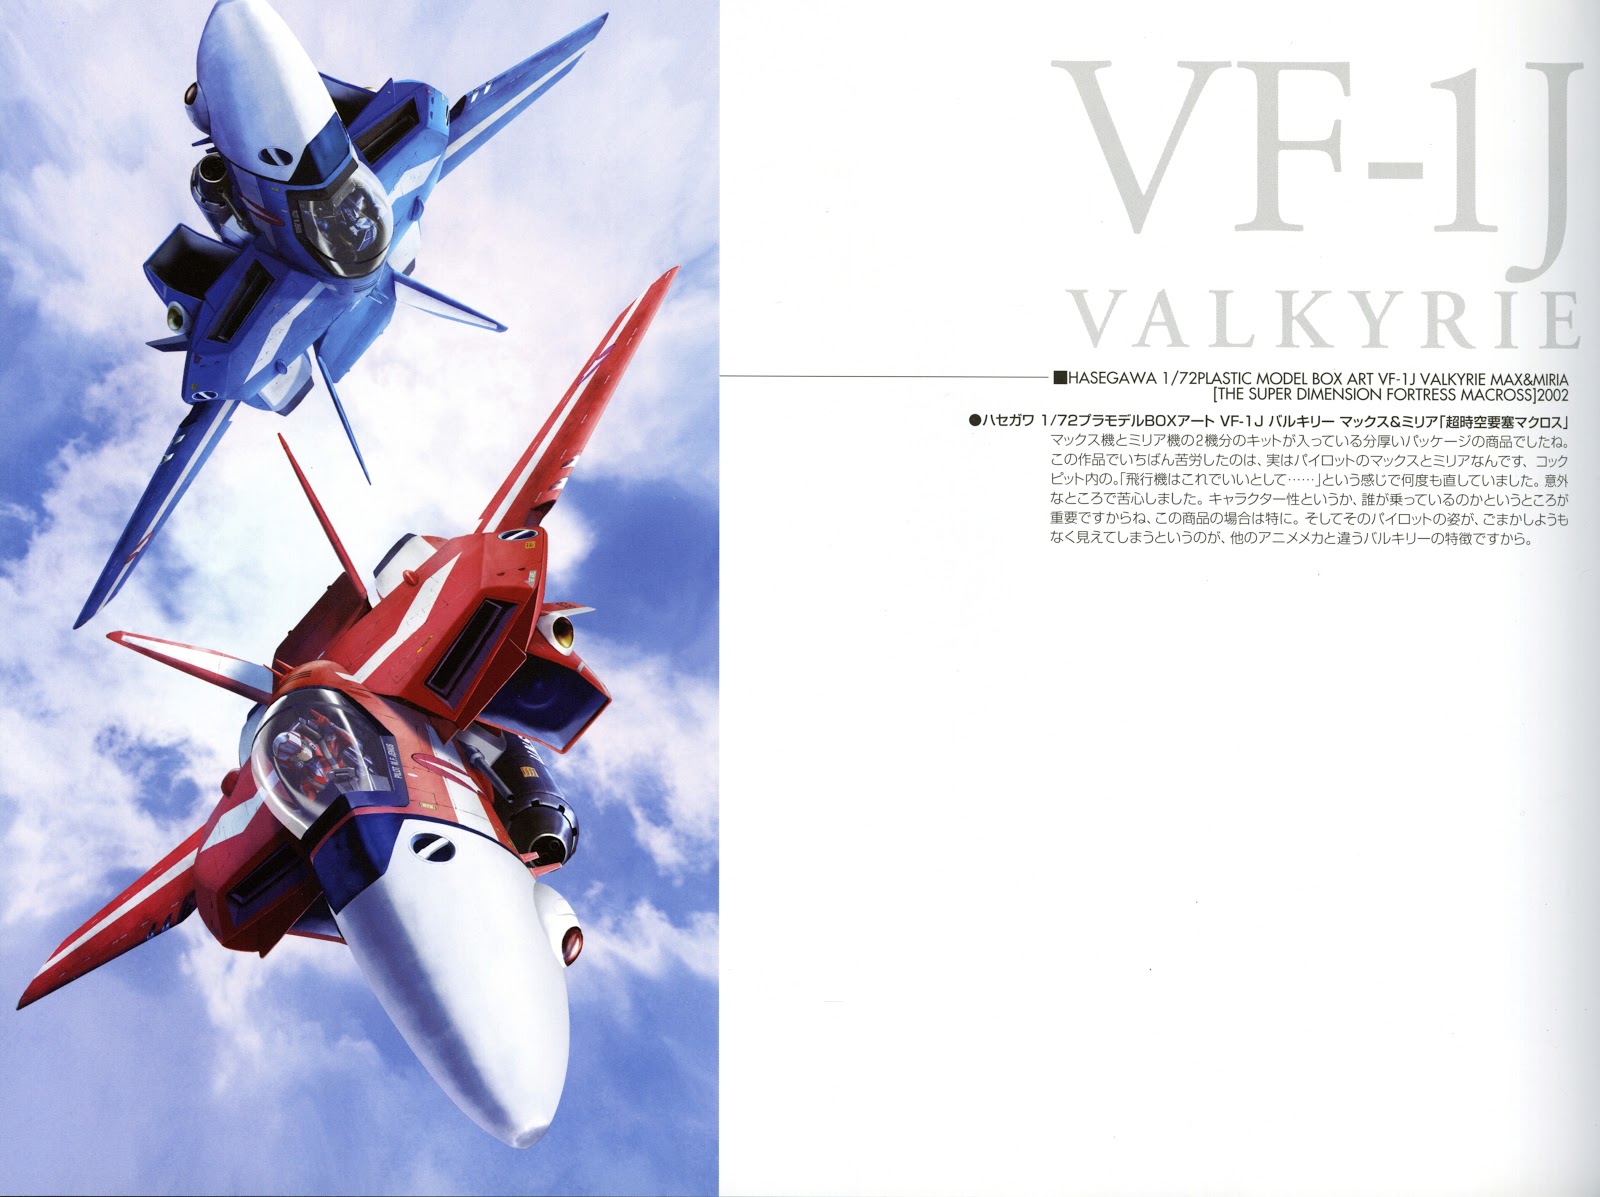 Valkyries - Art Works of Macross - Tenjin Hidetaka 